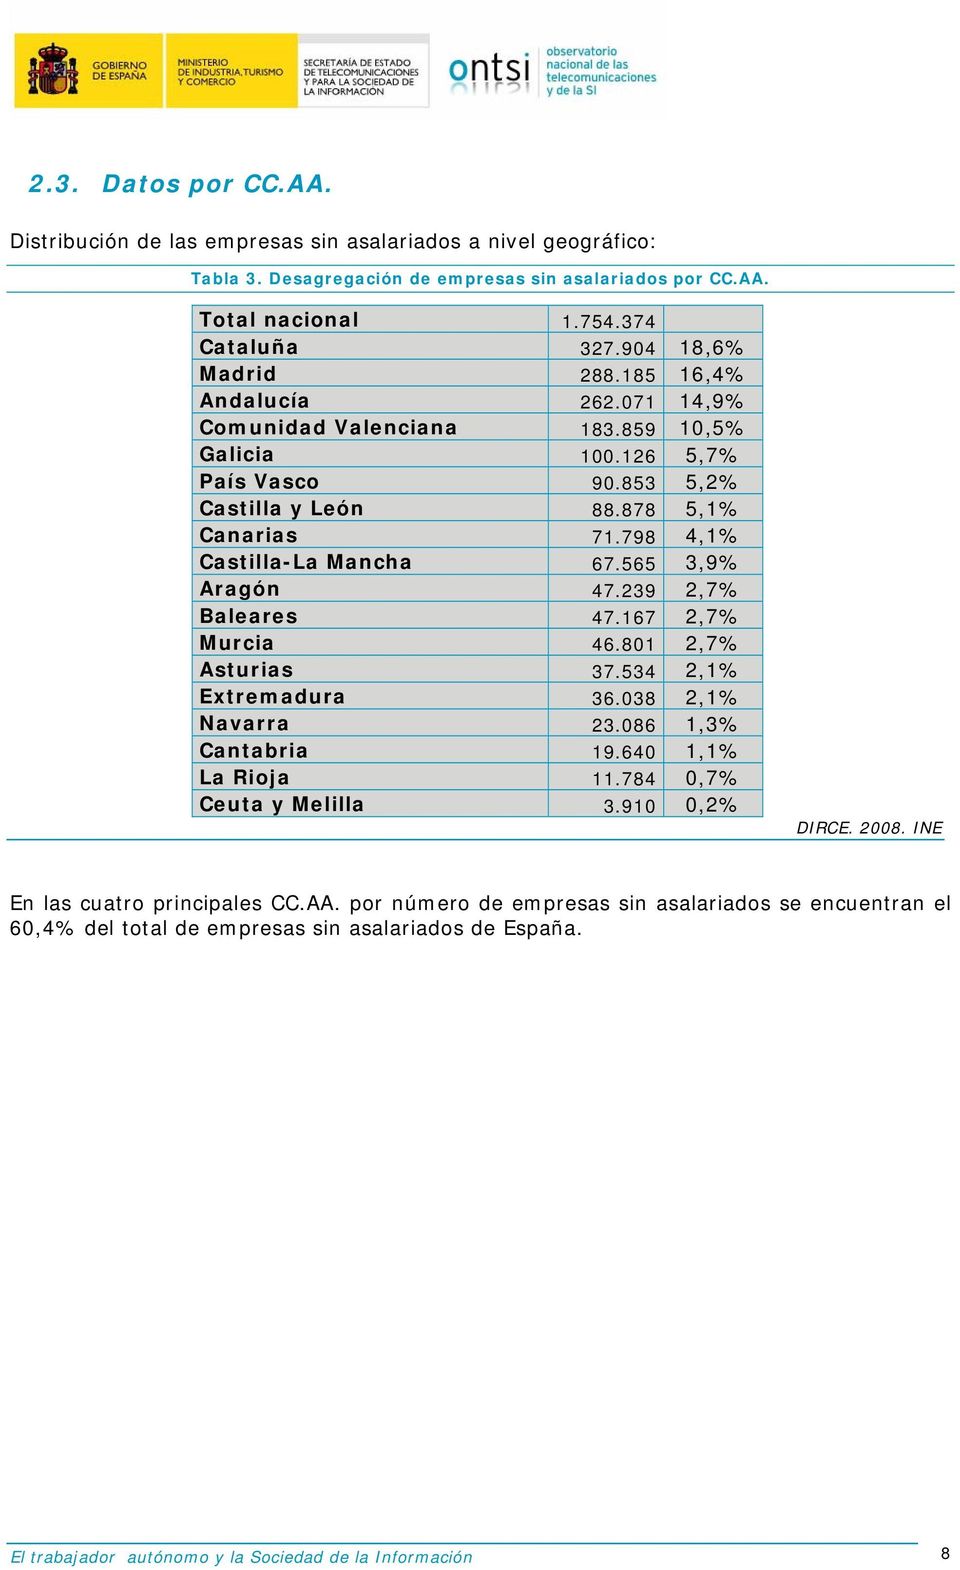 798 4,1% Castilla-La Mancha 67.565 3,9% Aragón 47.239 2,7% Baleares 47.167 2,7% Murcia 46.801 2,7% Asturias 37.534 2,1% Extremadura 36.038 2,1% Navarra 23.086 1,3% Cantabria 19.640 1,1% La Rioja 11.